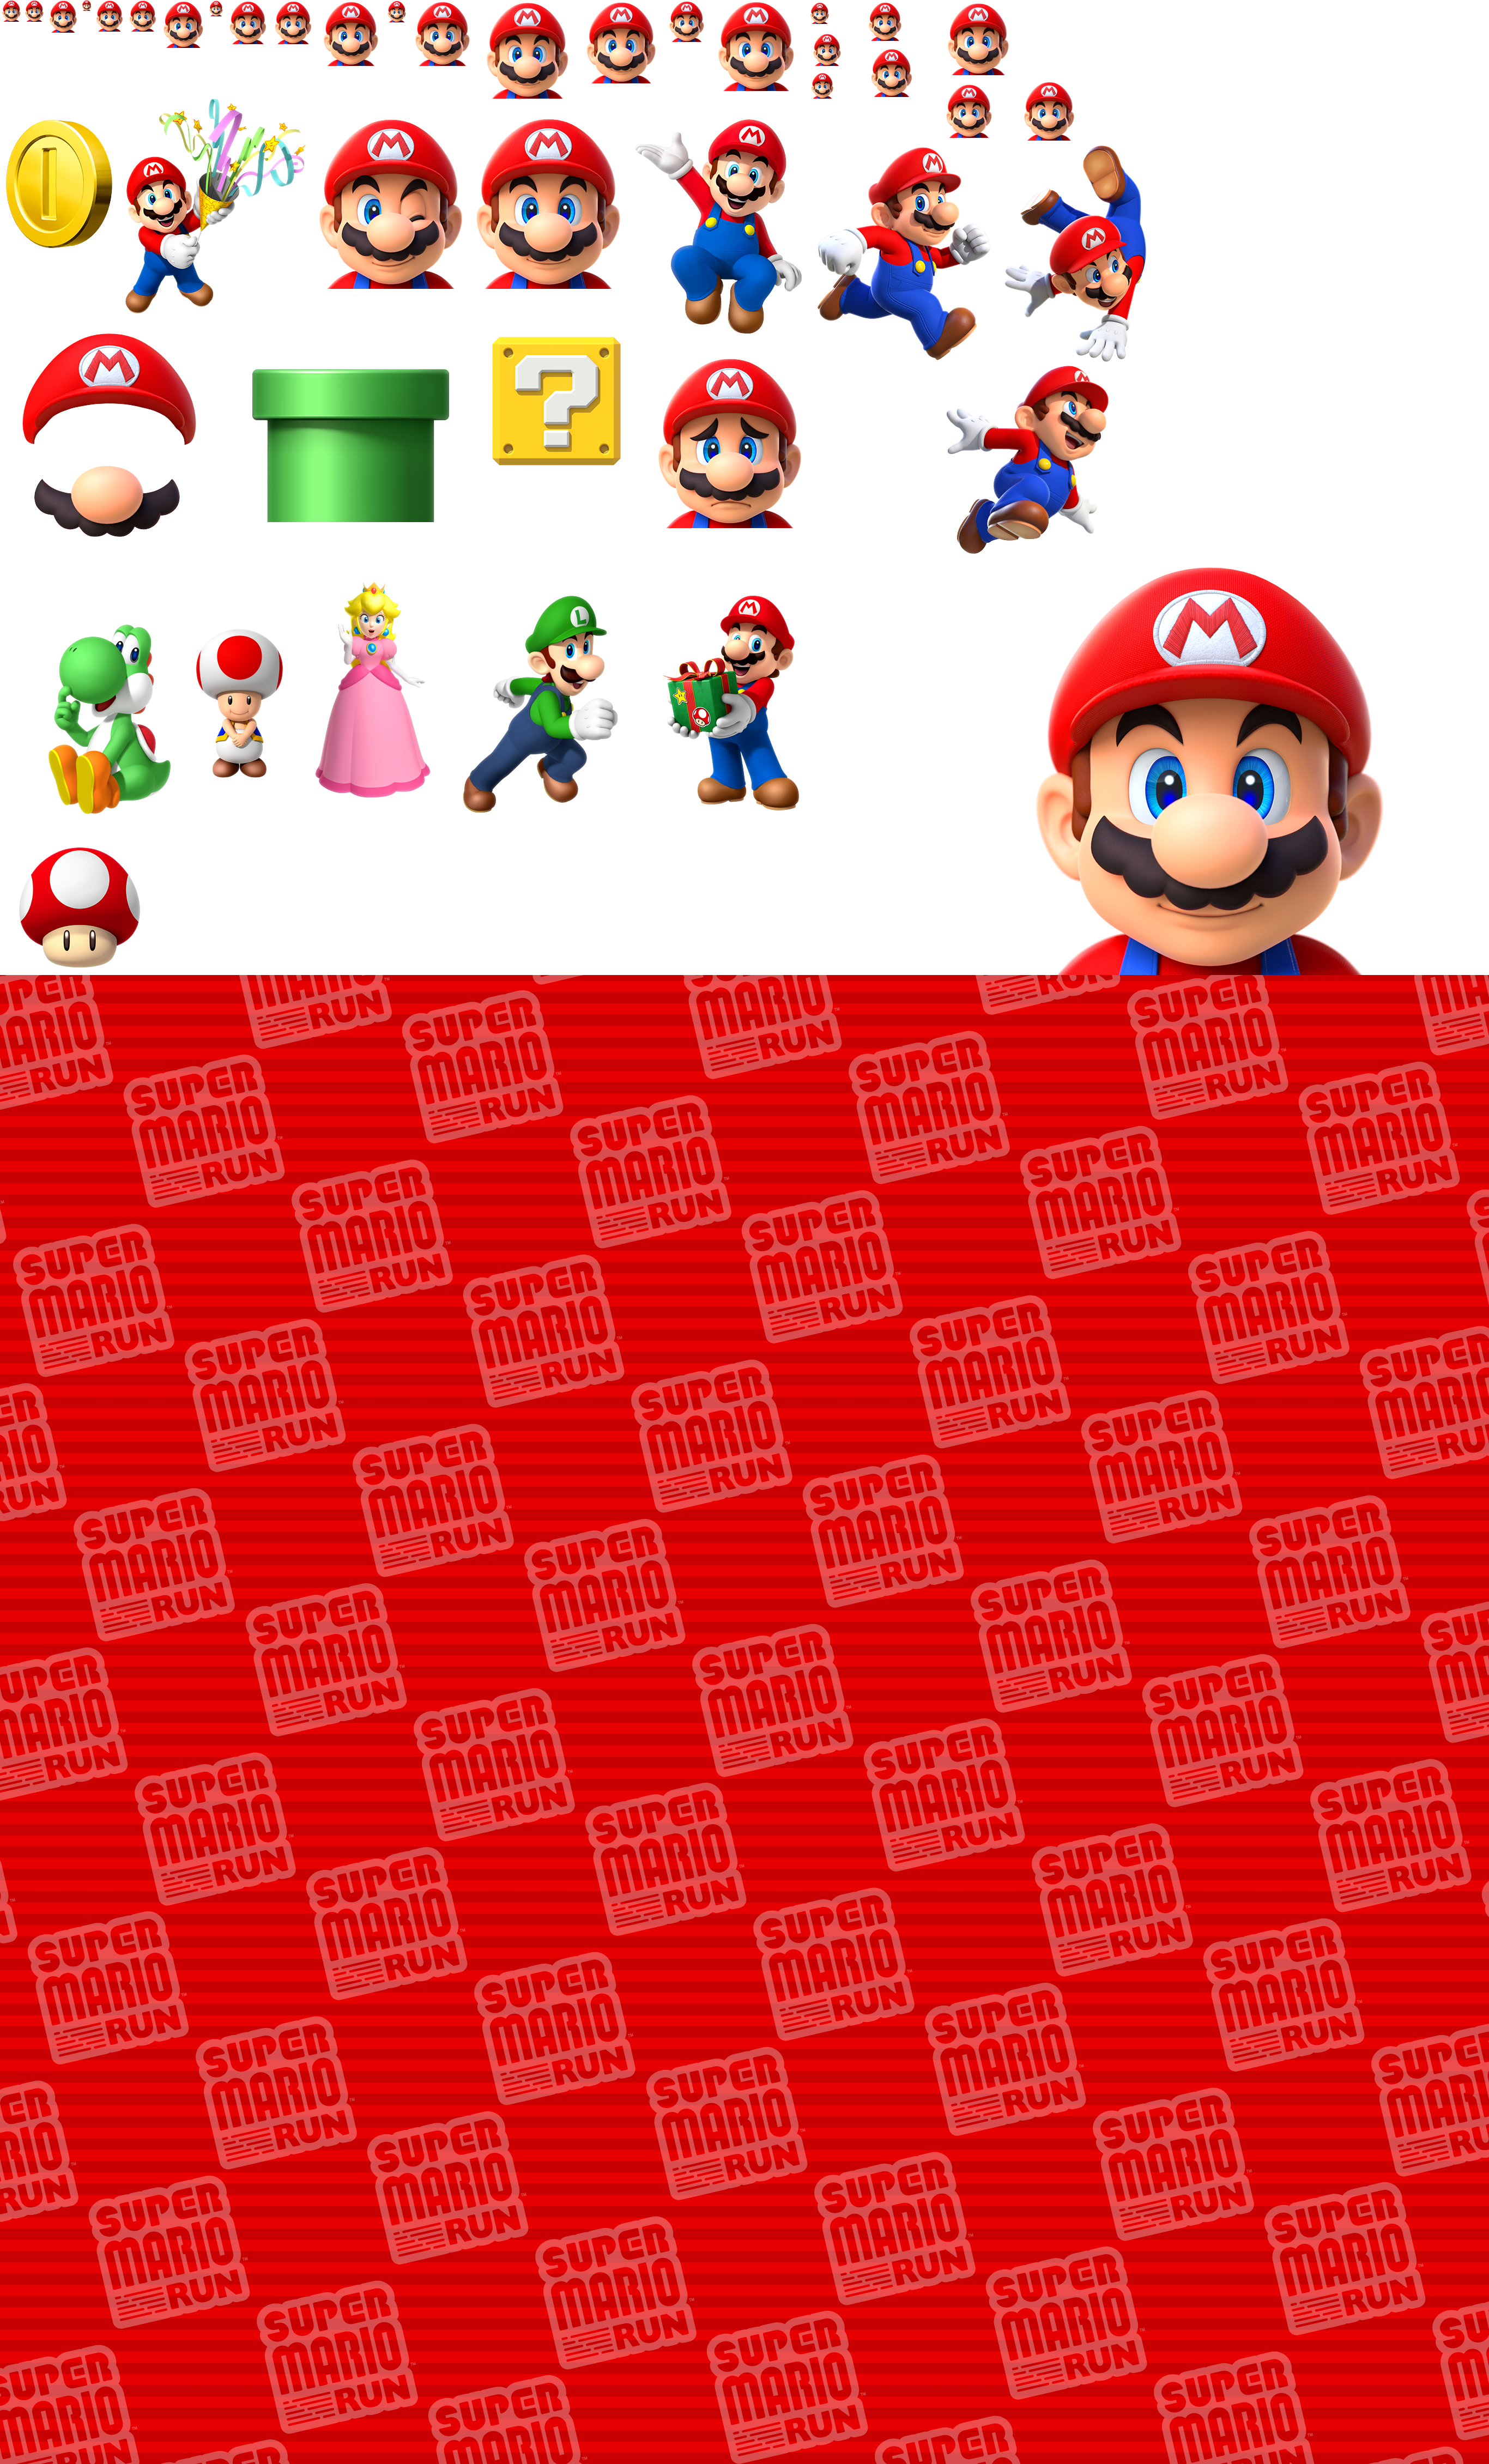 Super Mario Run - iMessage Stickers